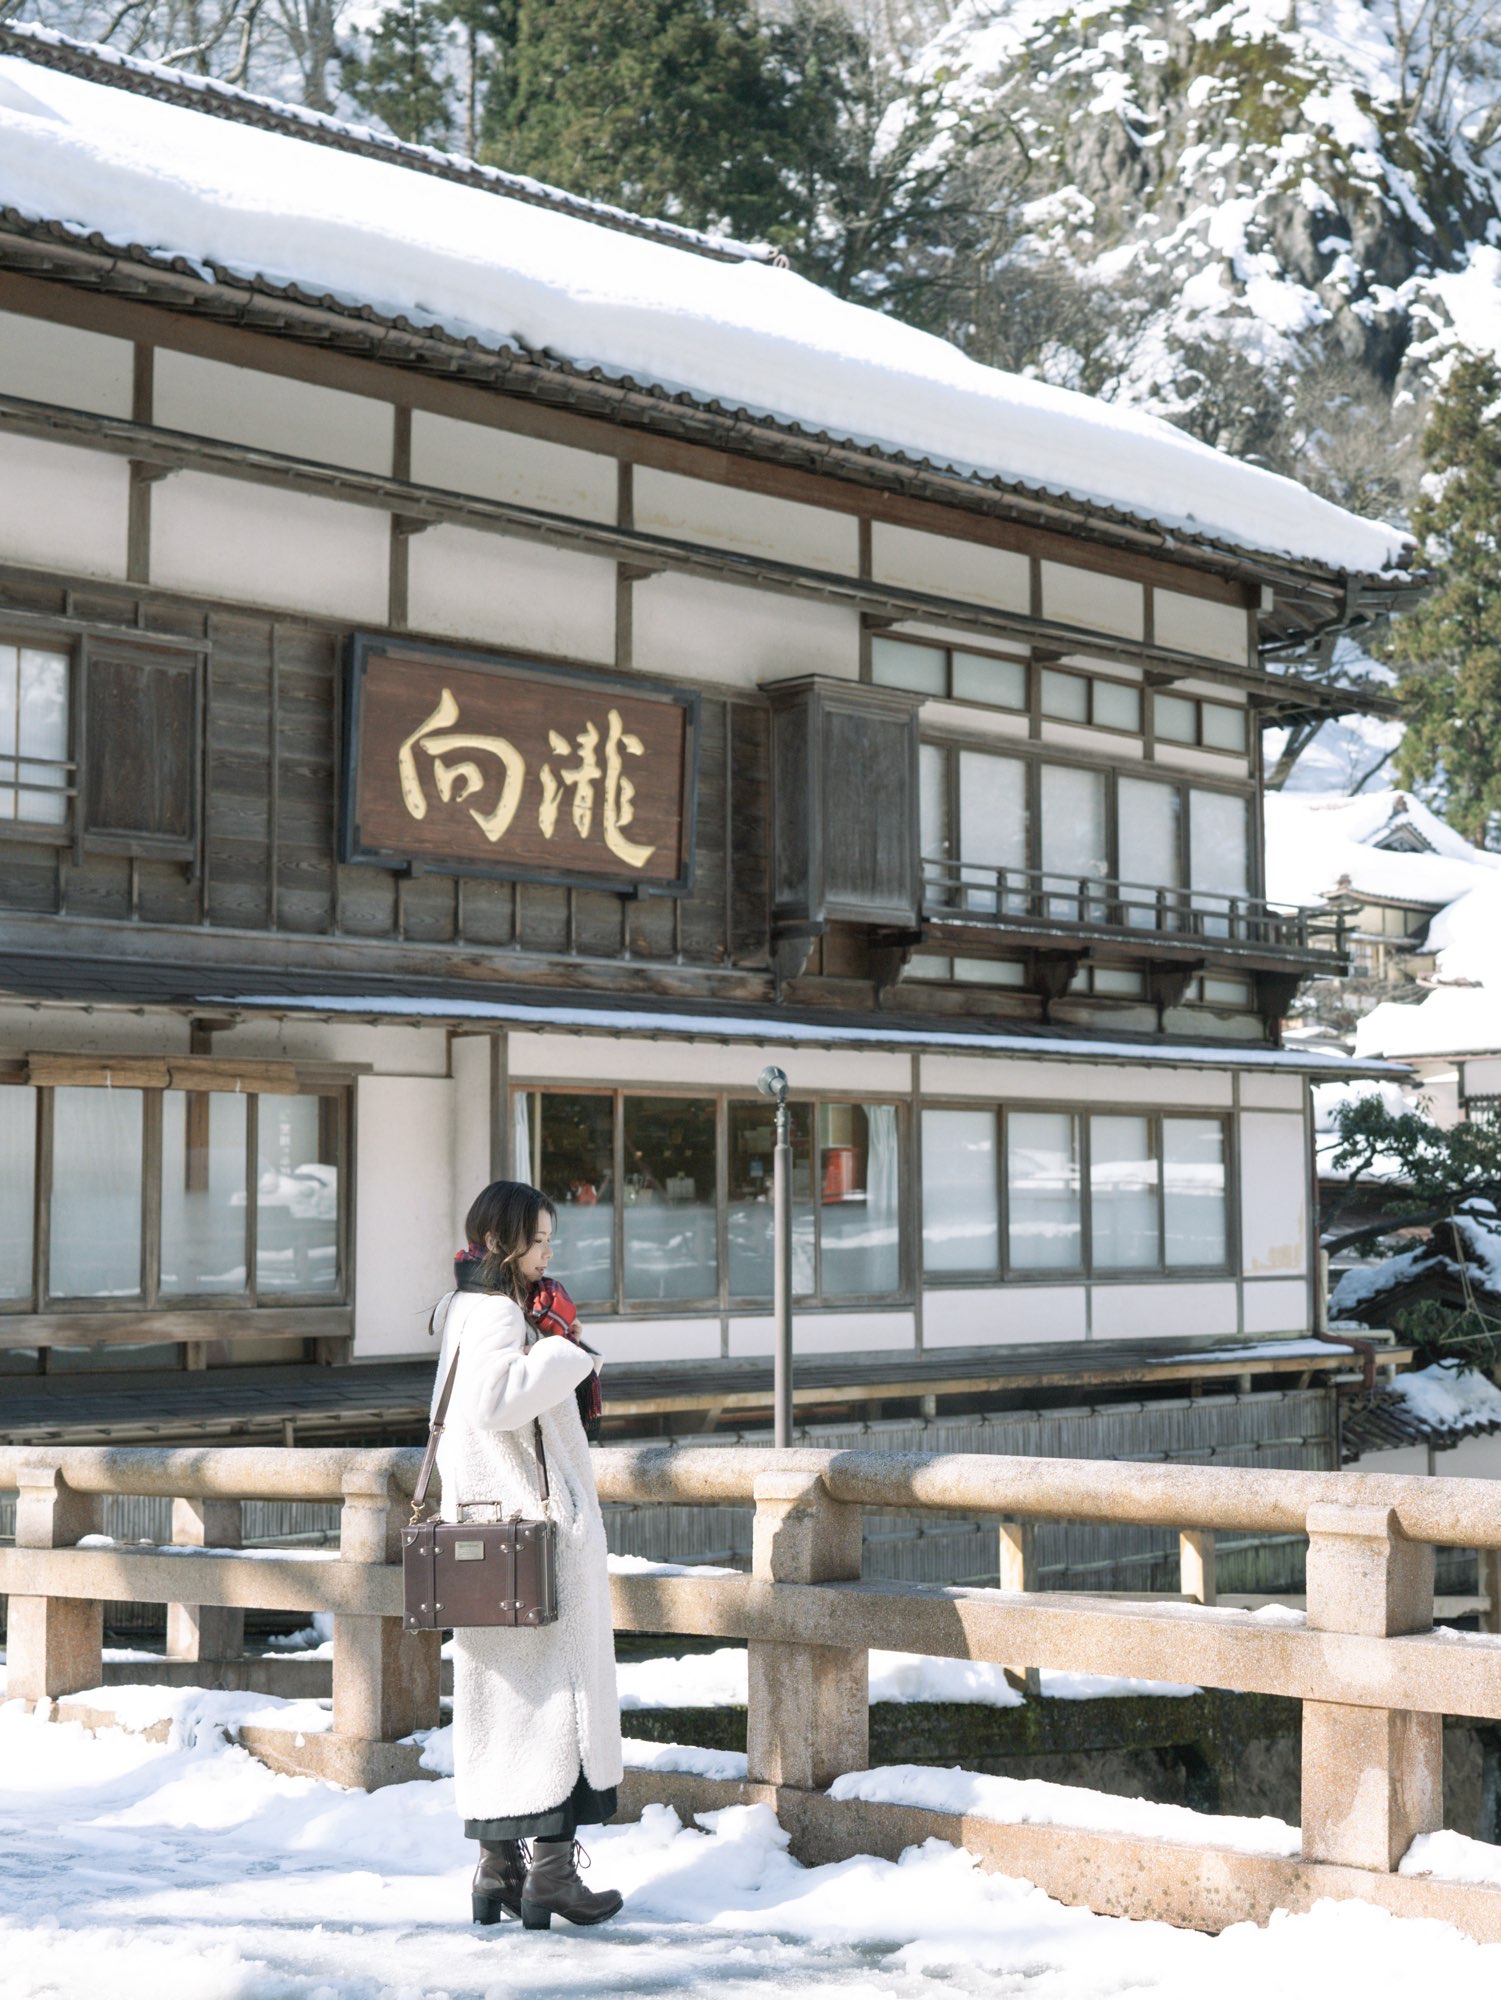 【福岛】登录有形文化财的温泉旅馆!